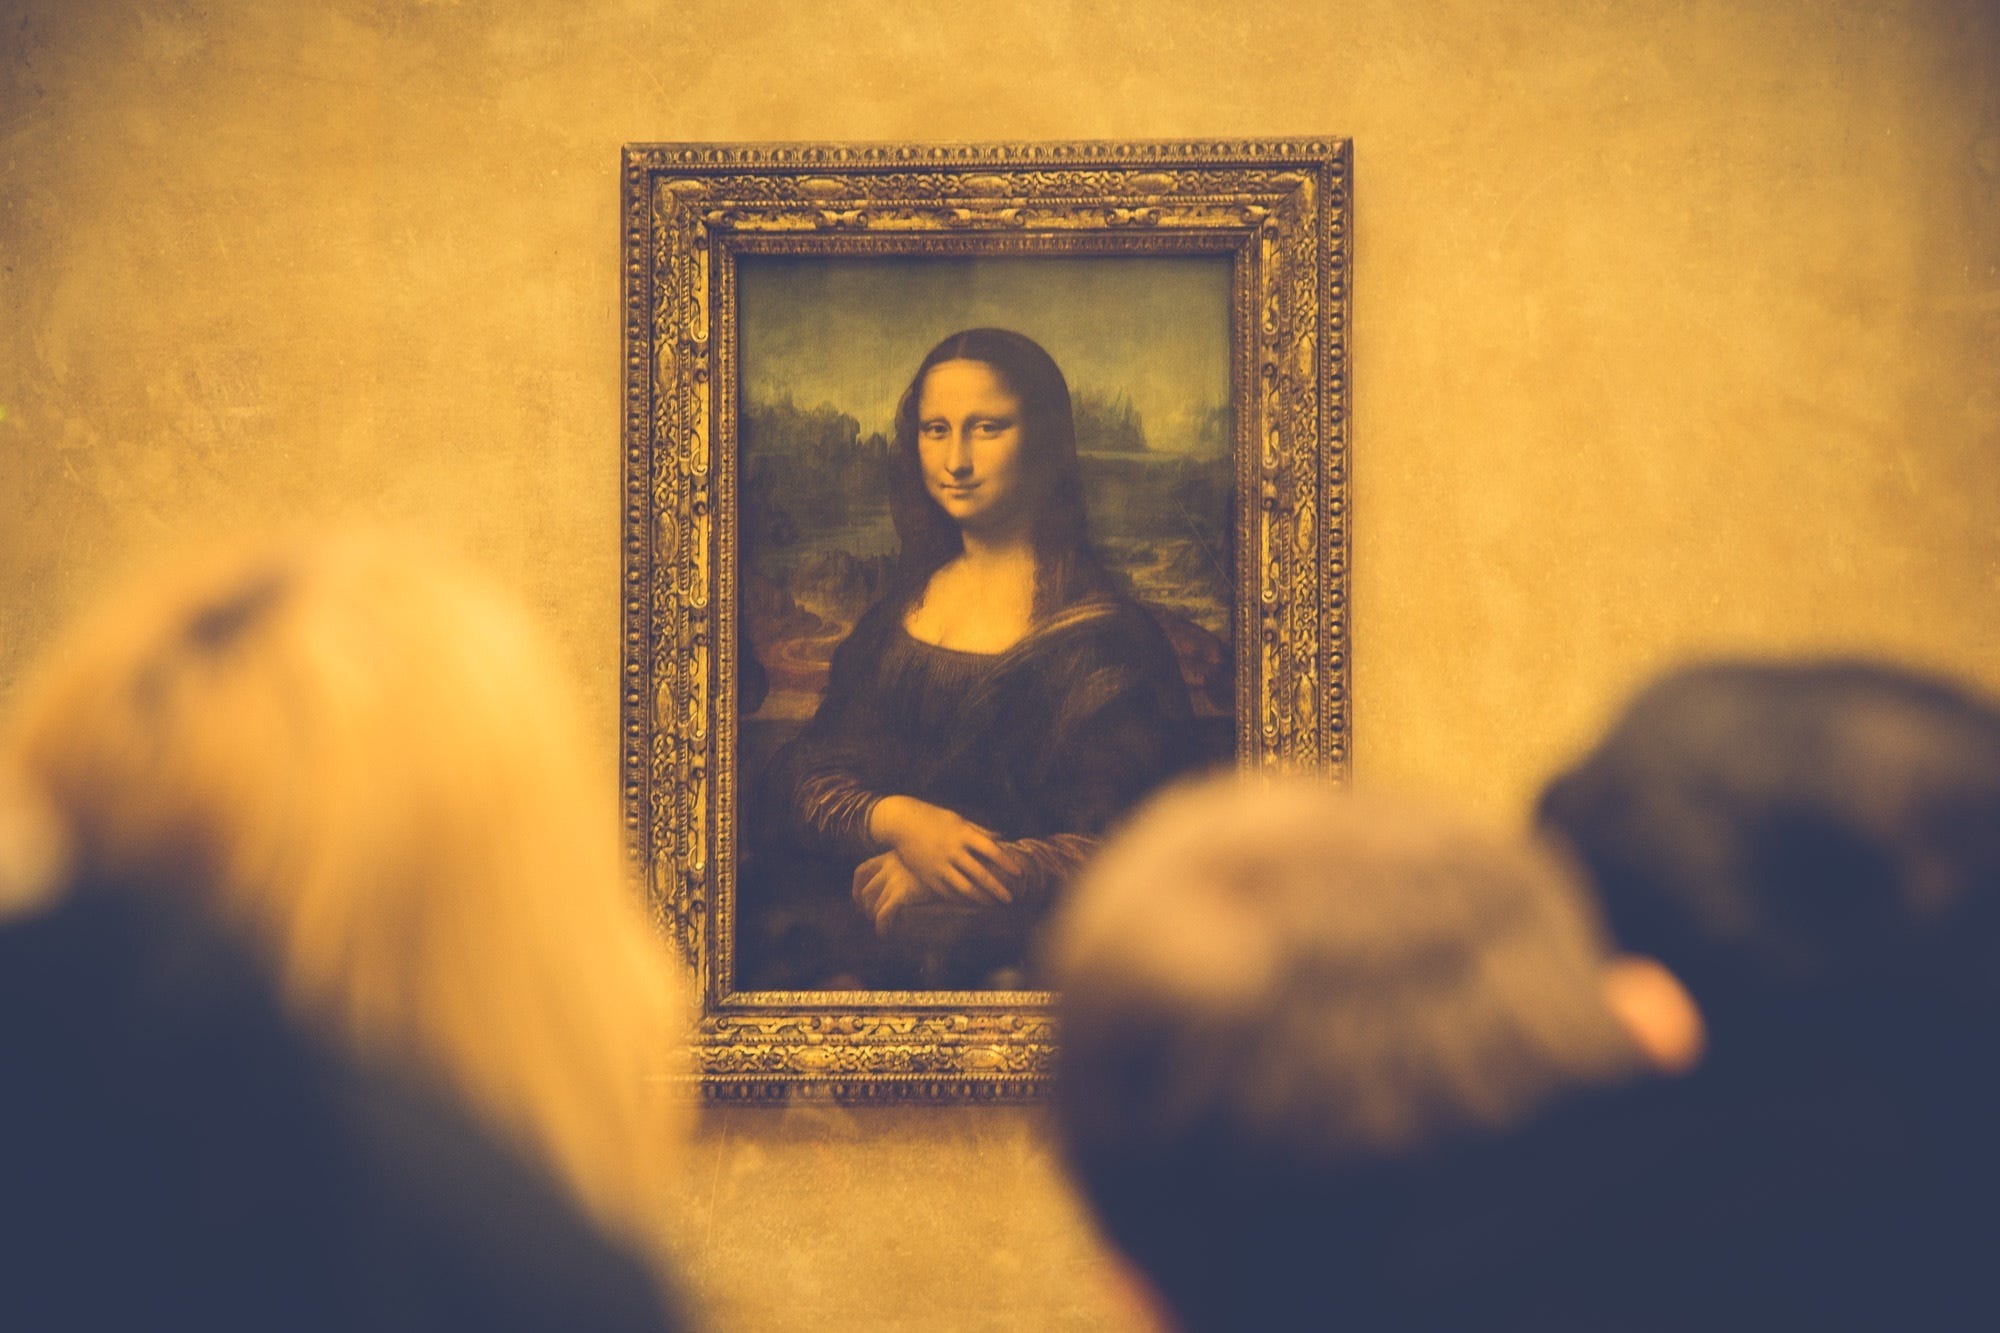 Leonardo da Vinci may have had ADHD, new study says